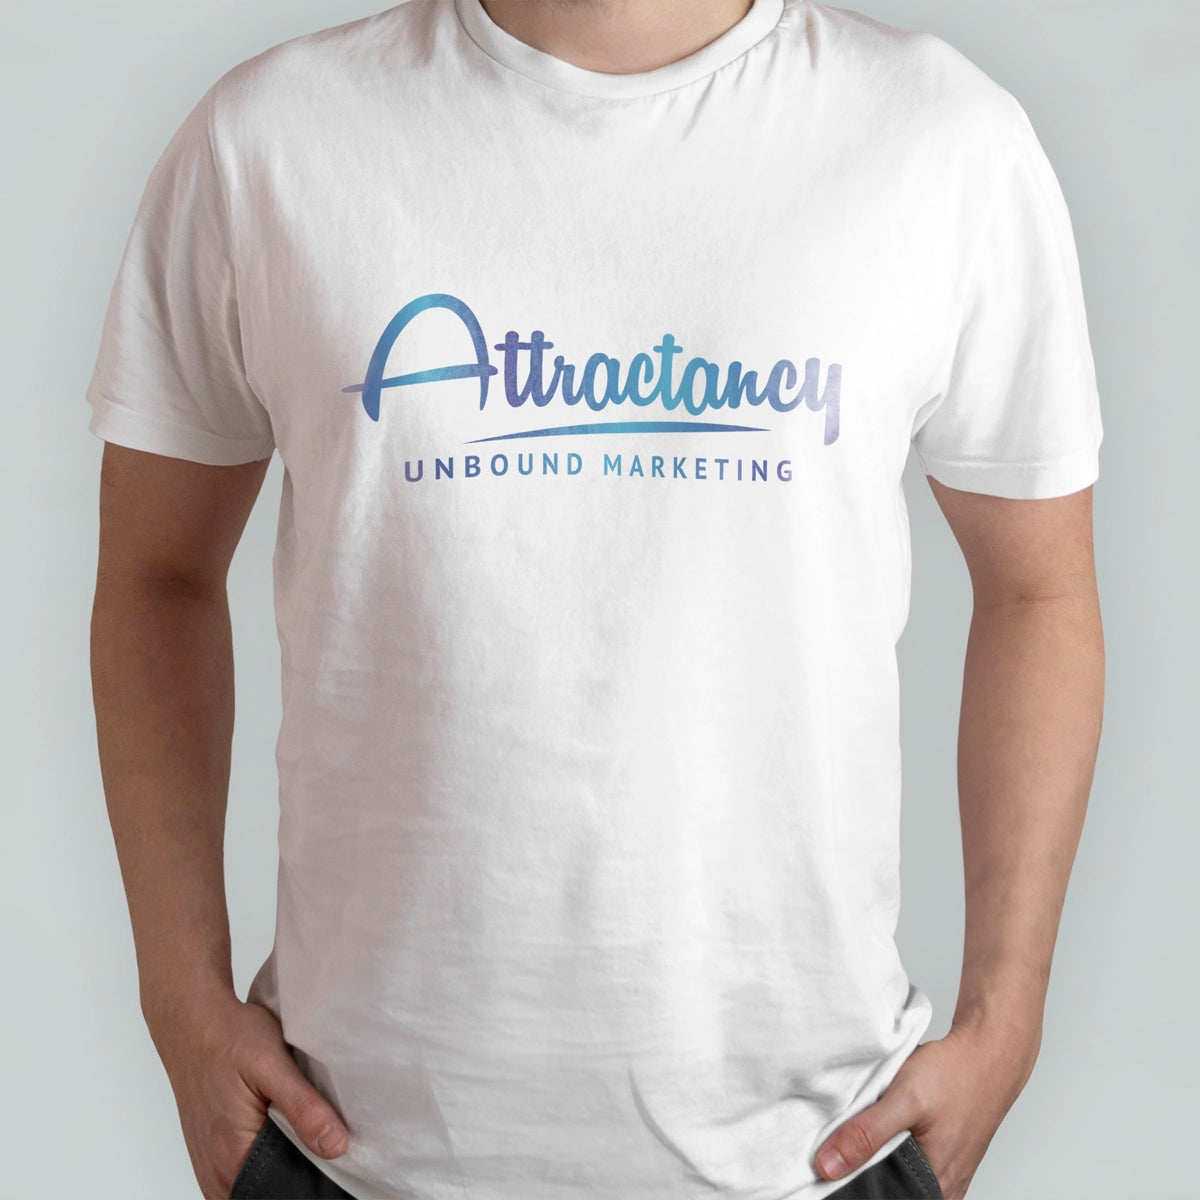 attractancy.com